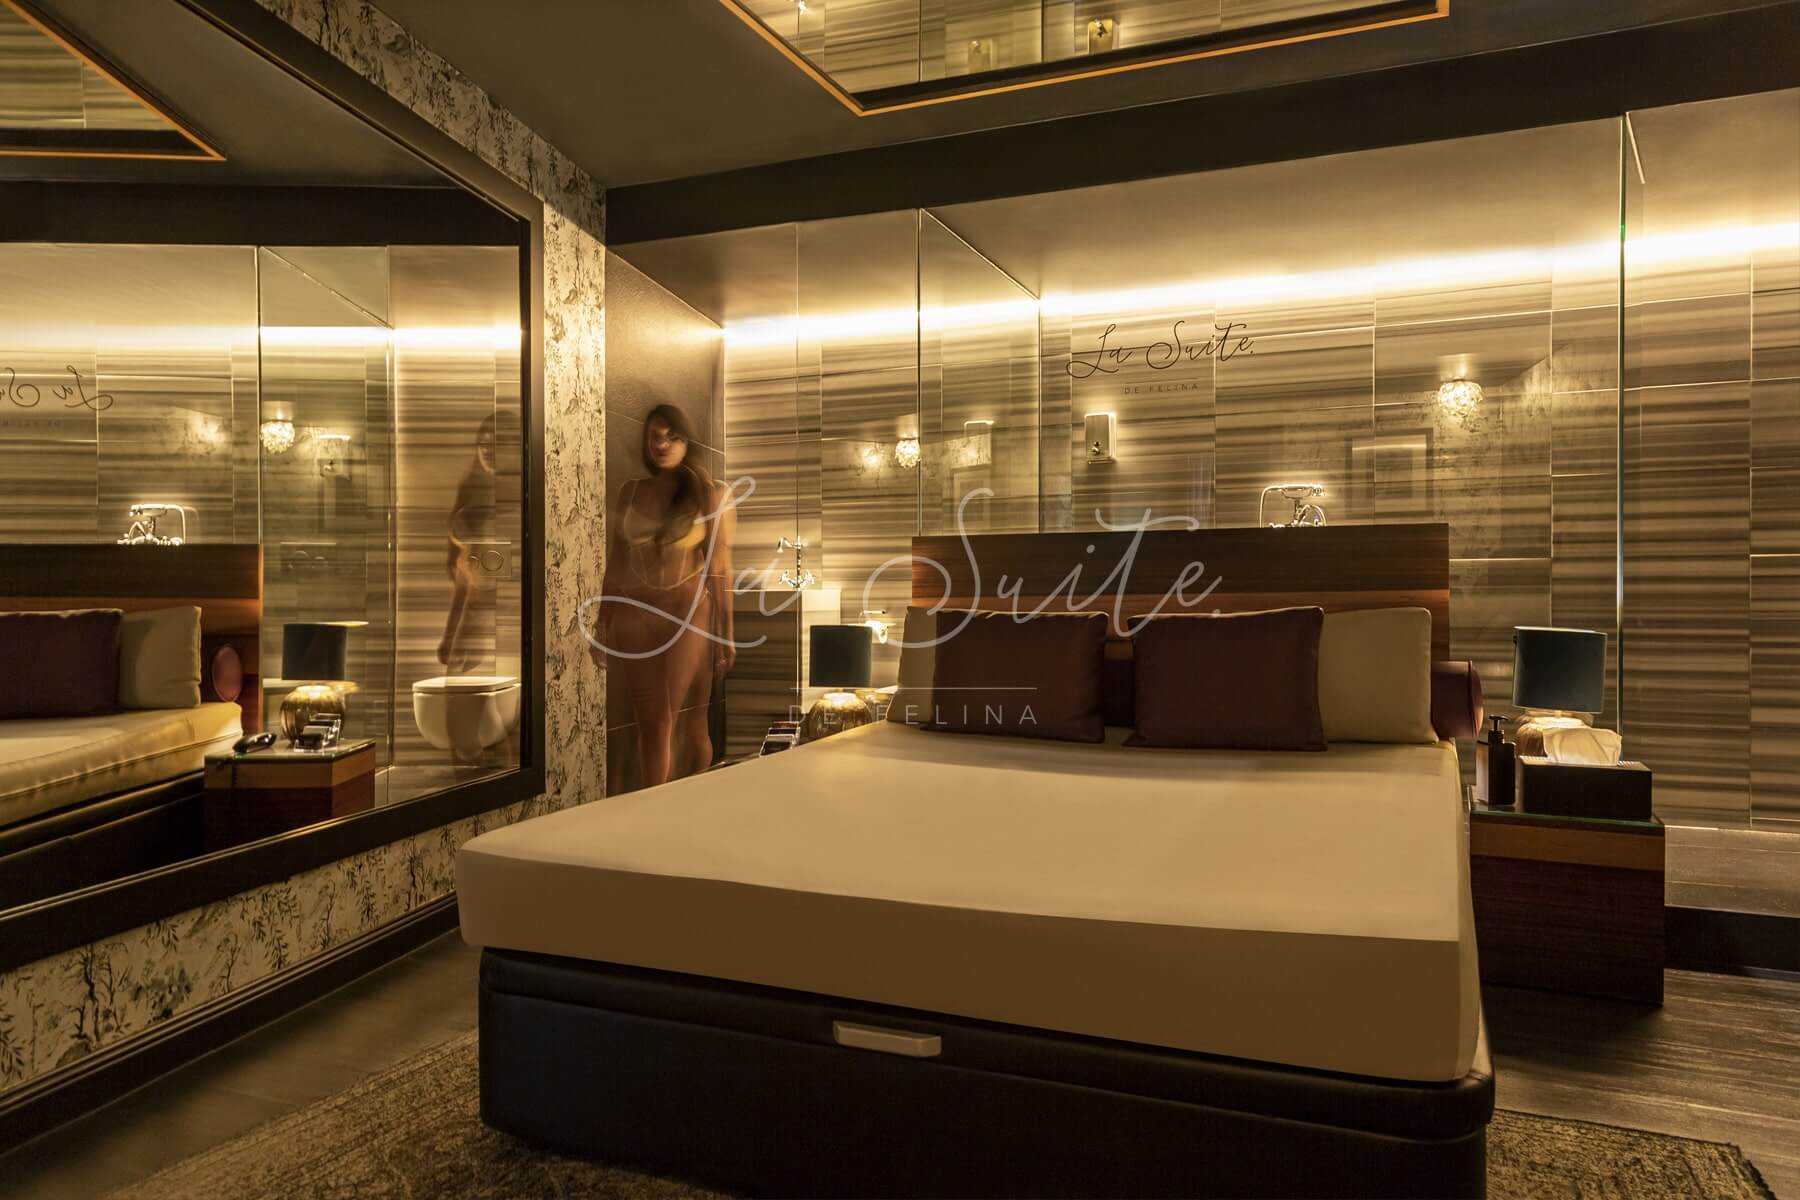 Chambre luxueuse Distinción, avec des murs beiges et noirs, des finitions en bois et un mobilier de luxe dans La Suite, Barcelone